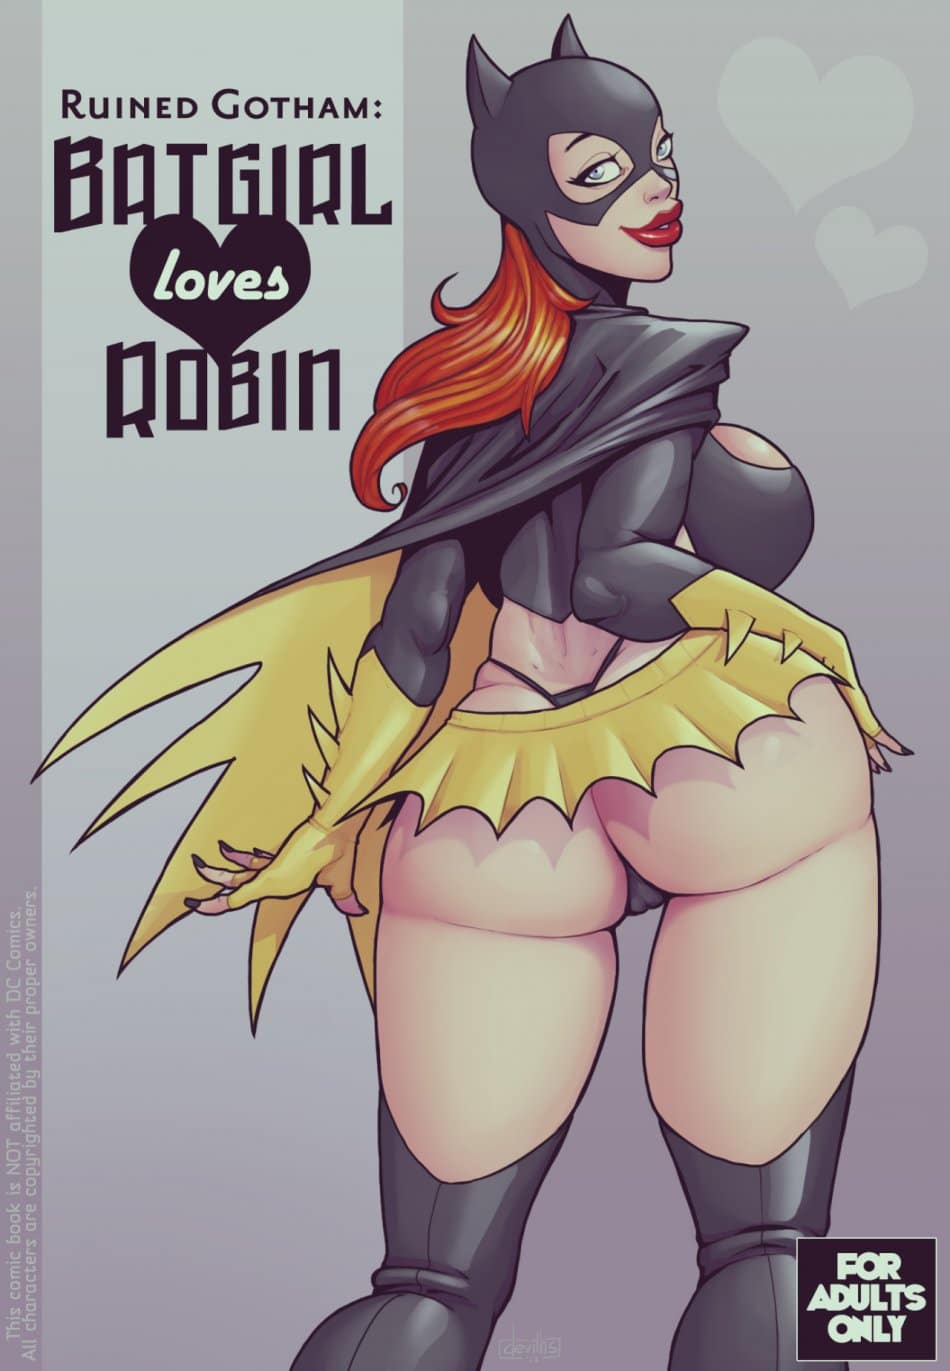 Batgirl fodendo gostoso com o Robin - HQ Adulto